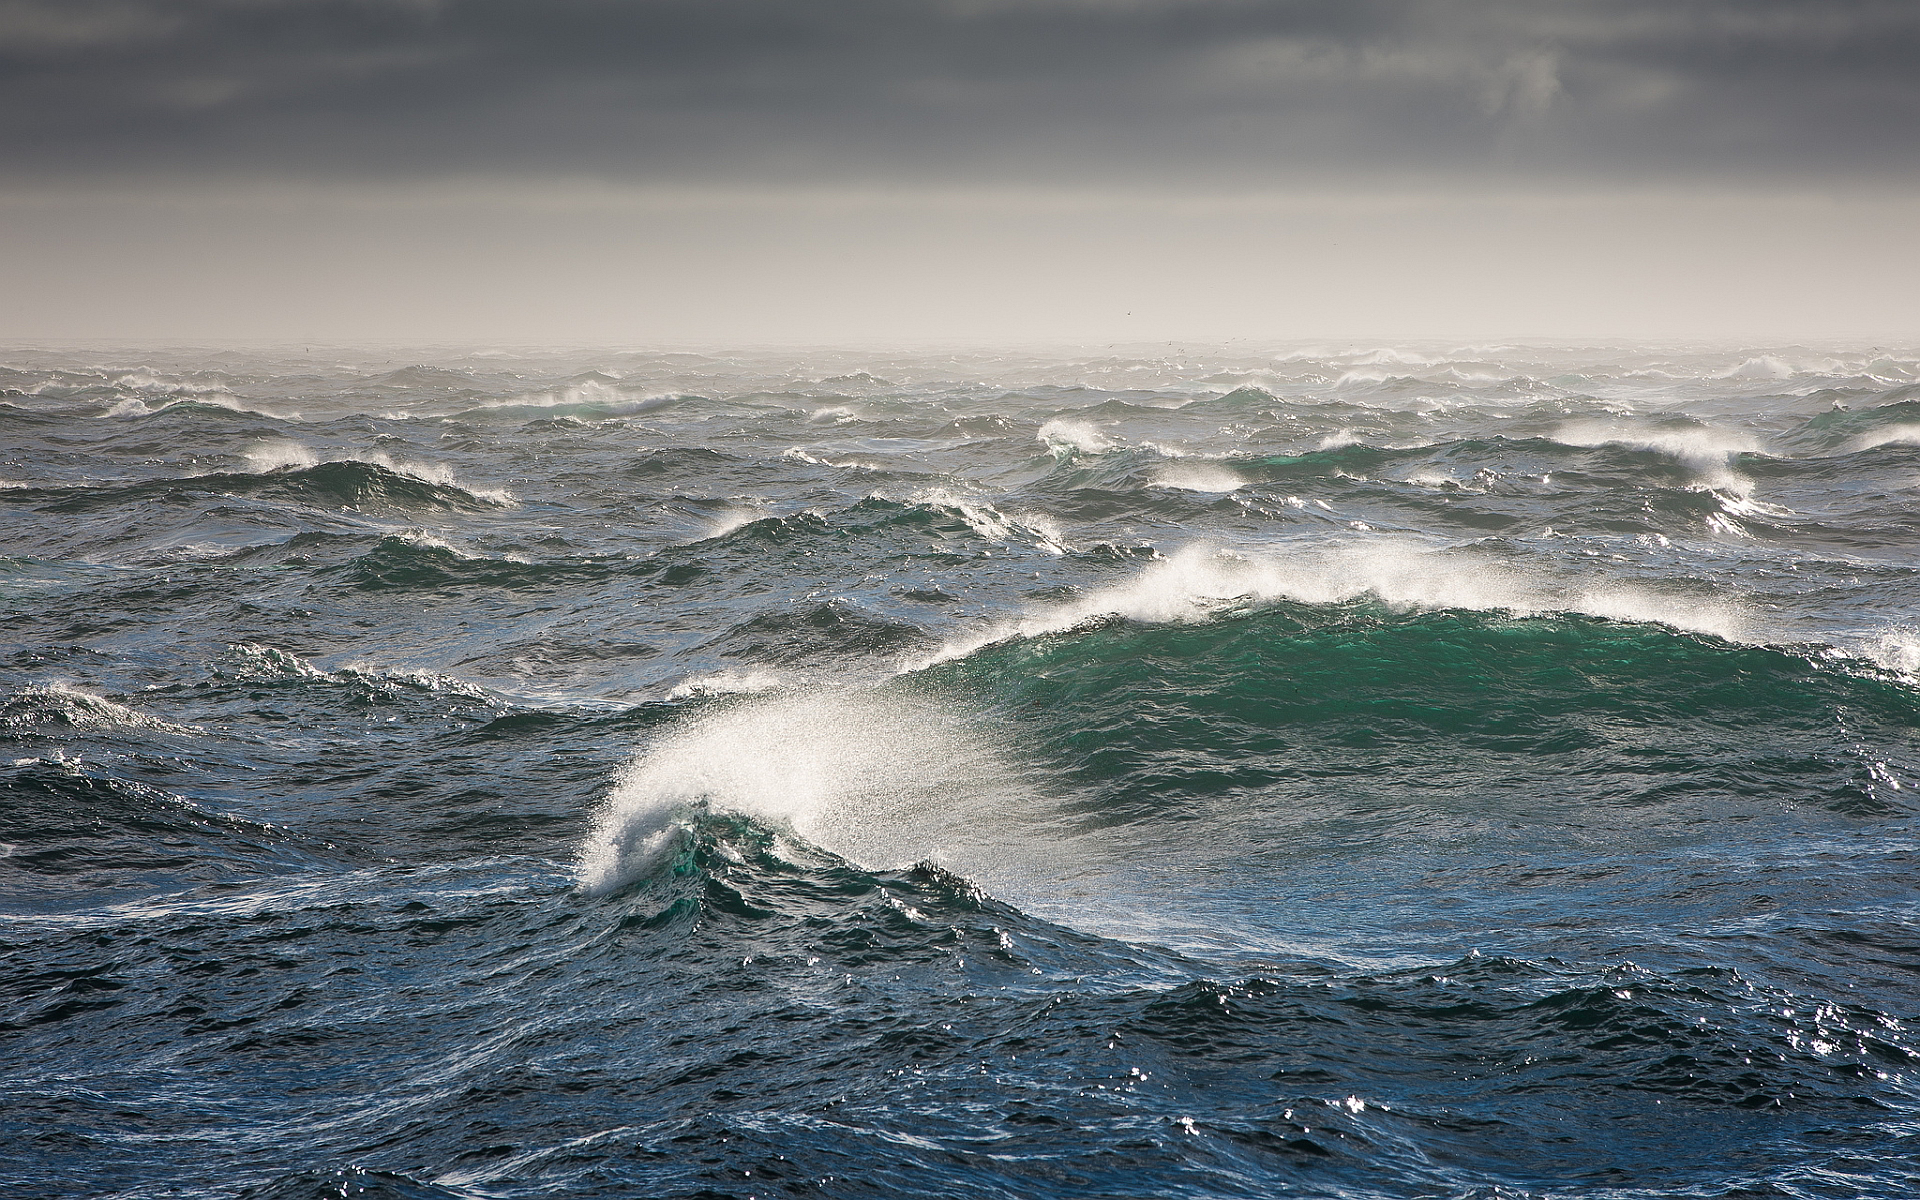 Rough ocean waves